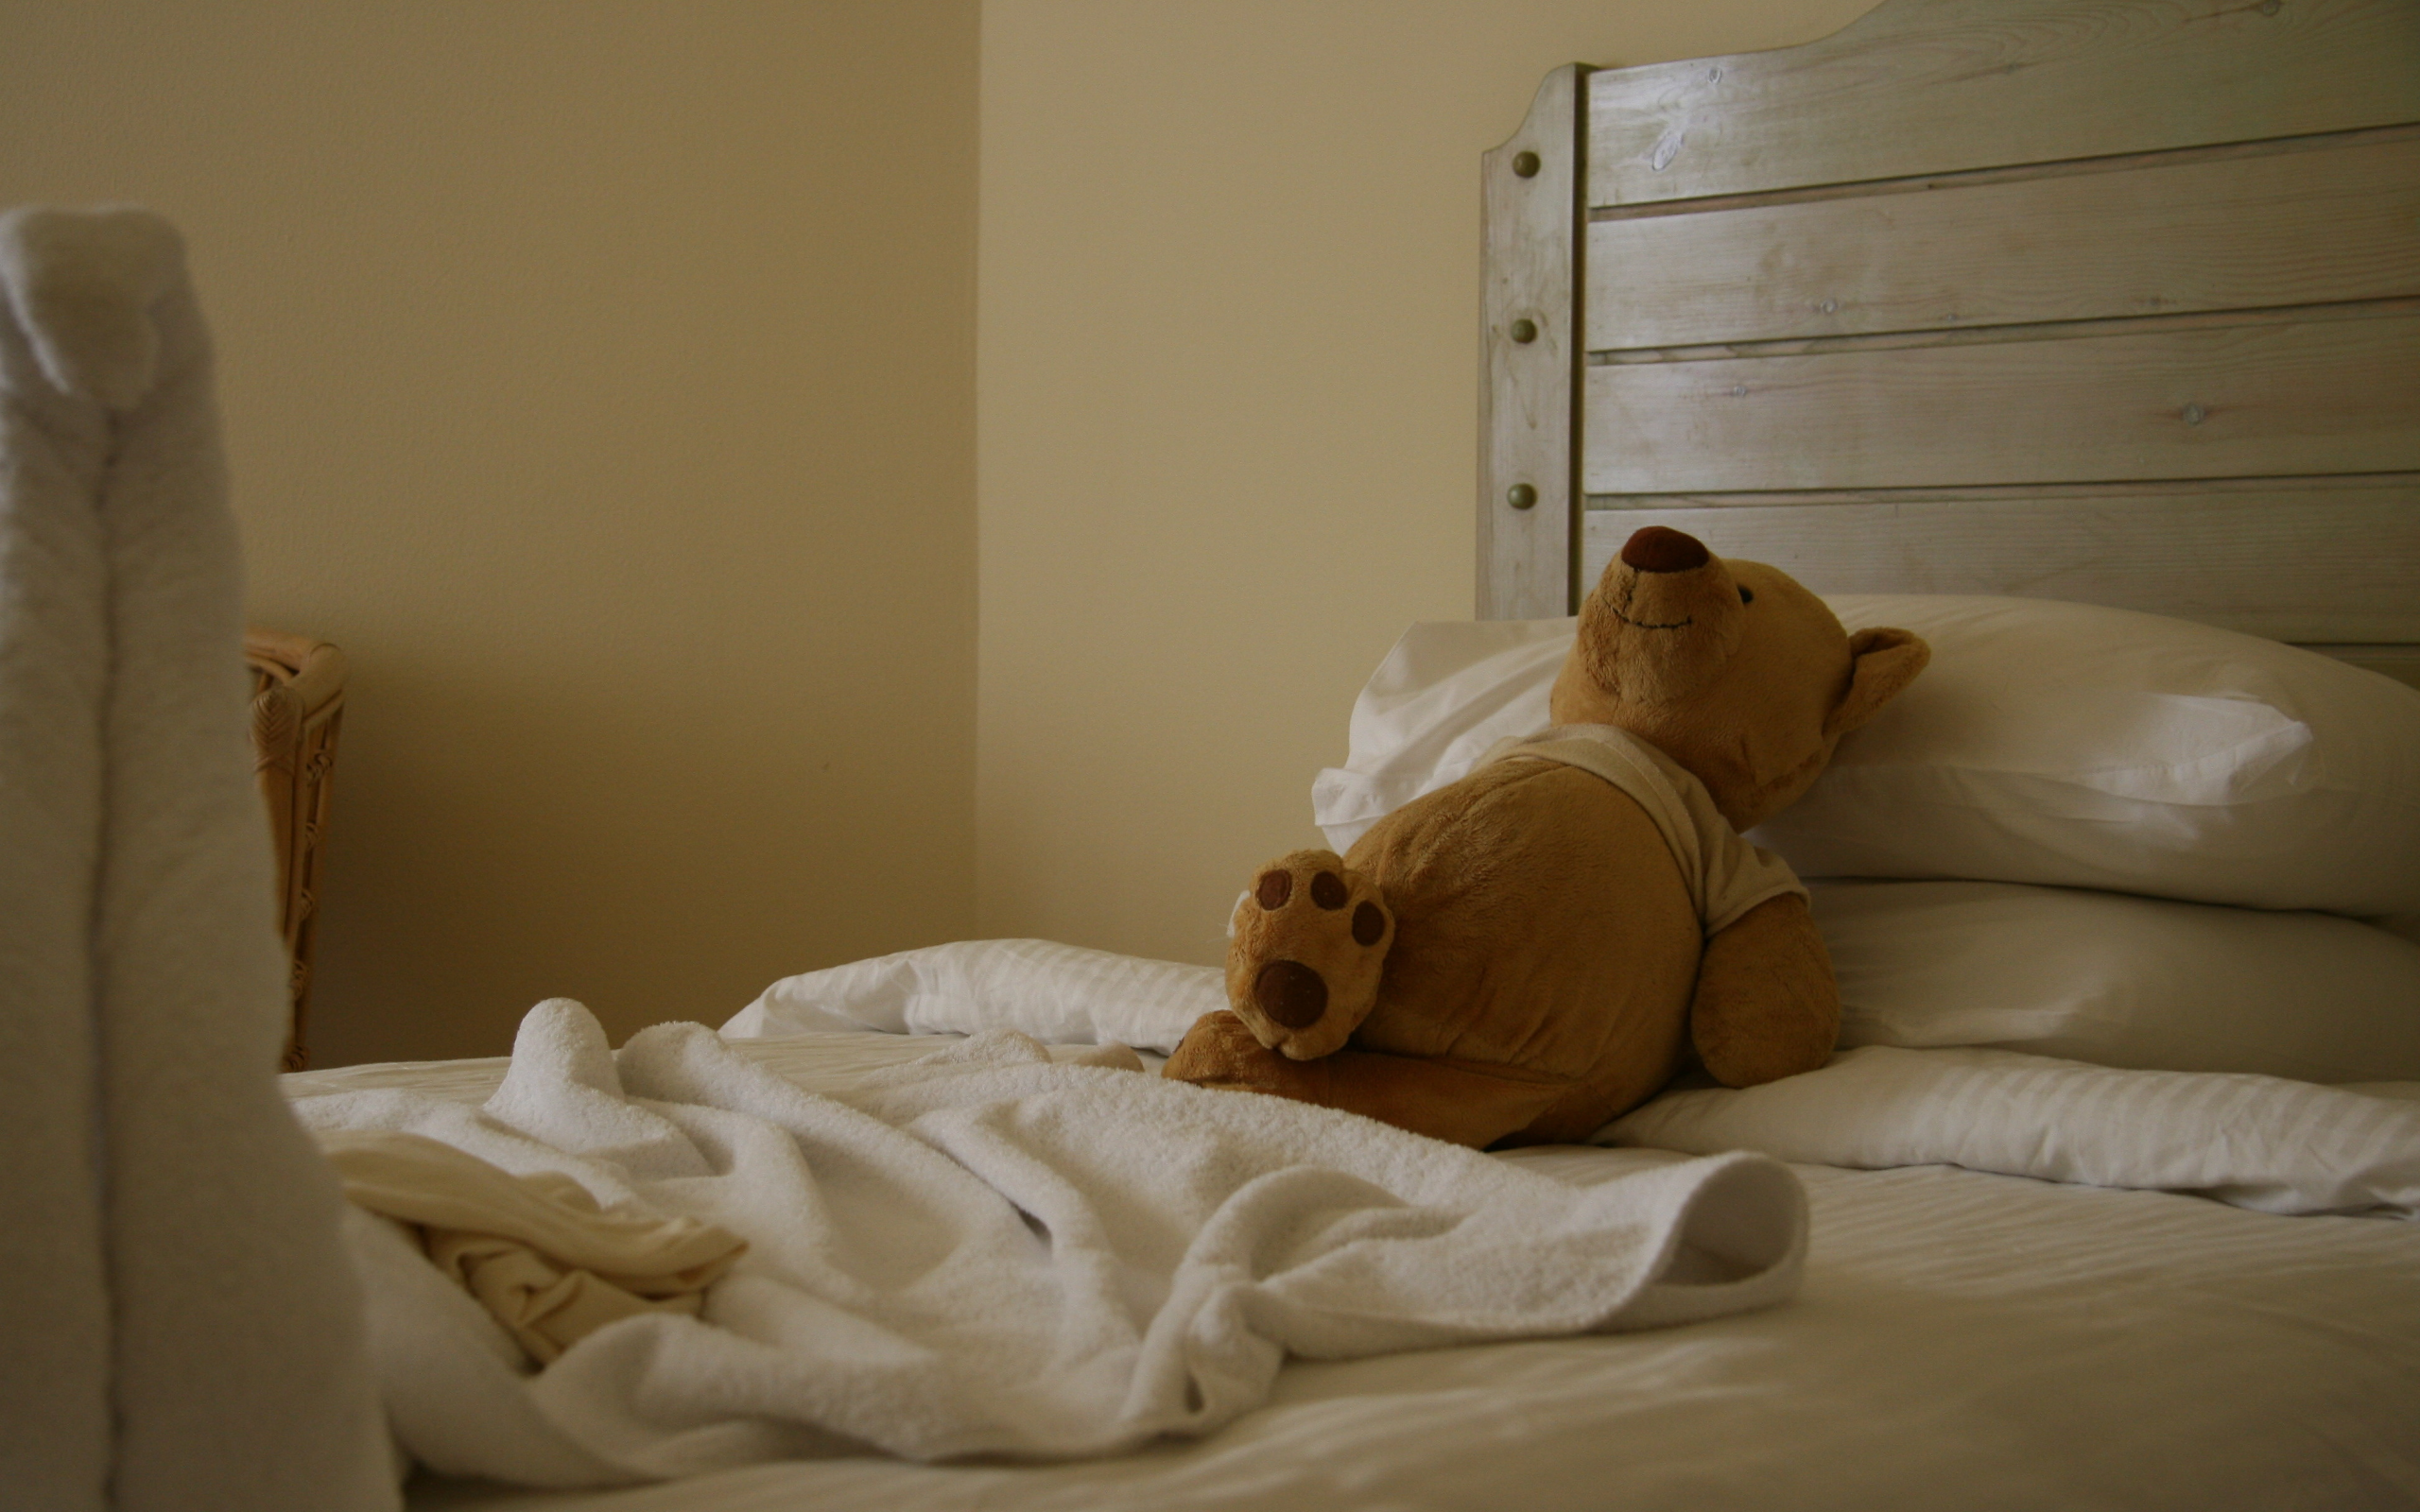 медведь, кровать, настроение, игрушка, отель, радость, сон, отдых